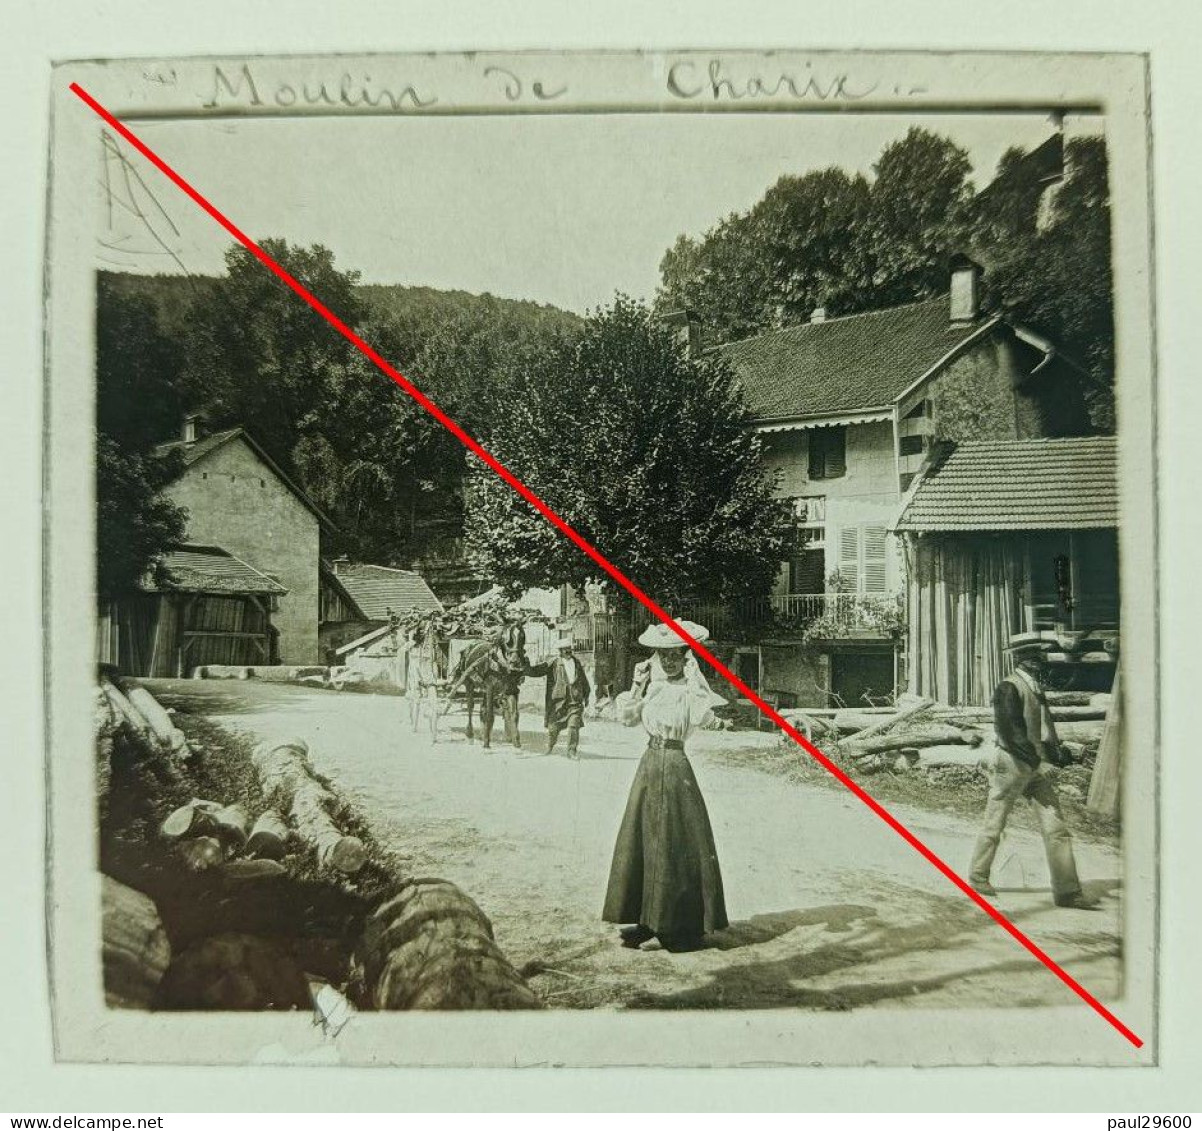 Photo Sur Plaque De Verre, L'ain, Moulin De Charix, Village, Maison, Rue, Attelage, Hangars, Bâtiments, Années 1930. - Glasplaten